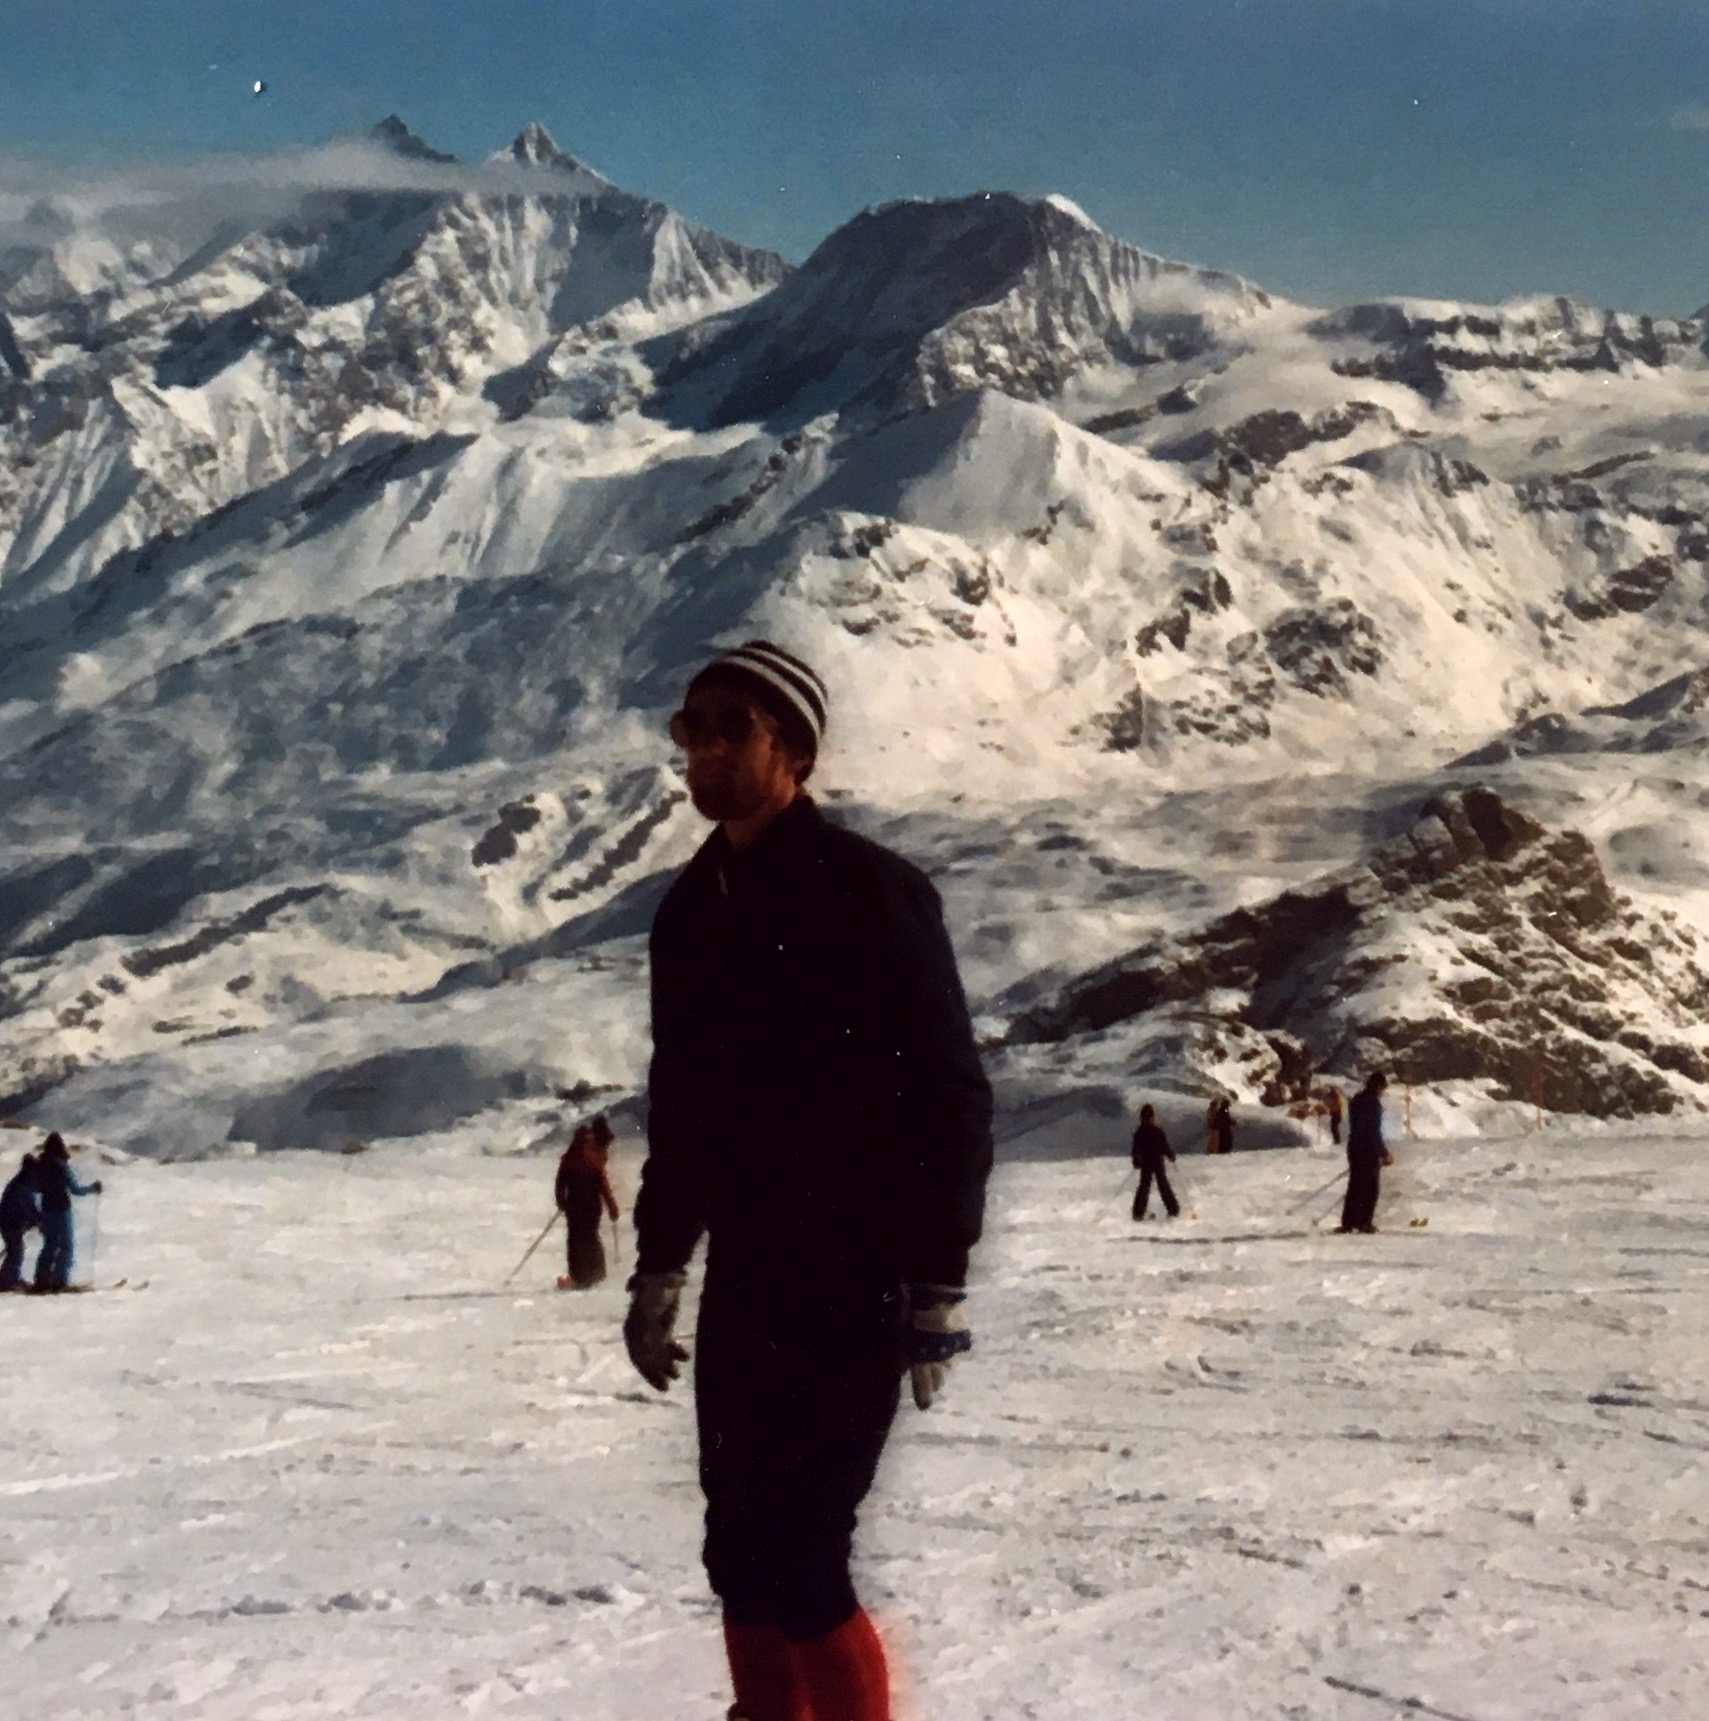 Slalom/utfor løypene i Zermatt. 2 uker i Sveits på kurs for Smelteverket i forb. med kjøp av ny X-ray spektrograf. Sammen med Jakob Lindstrøm Helga ble det anledning til å prøve løypene i vinterparadiset Zermatt med Matterhorn som nærmeste nabo.